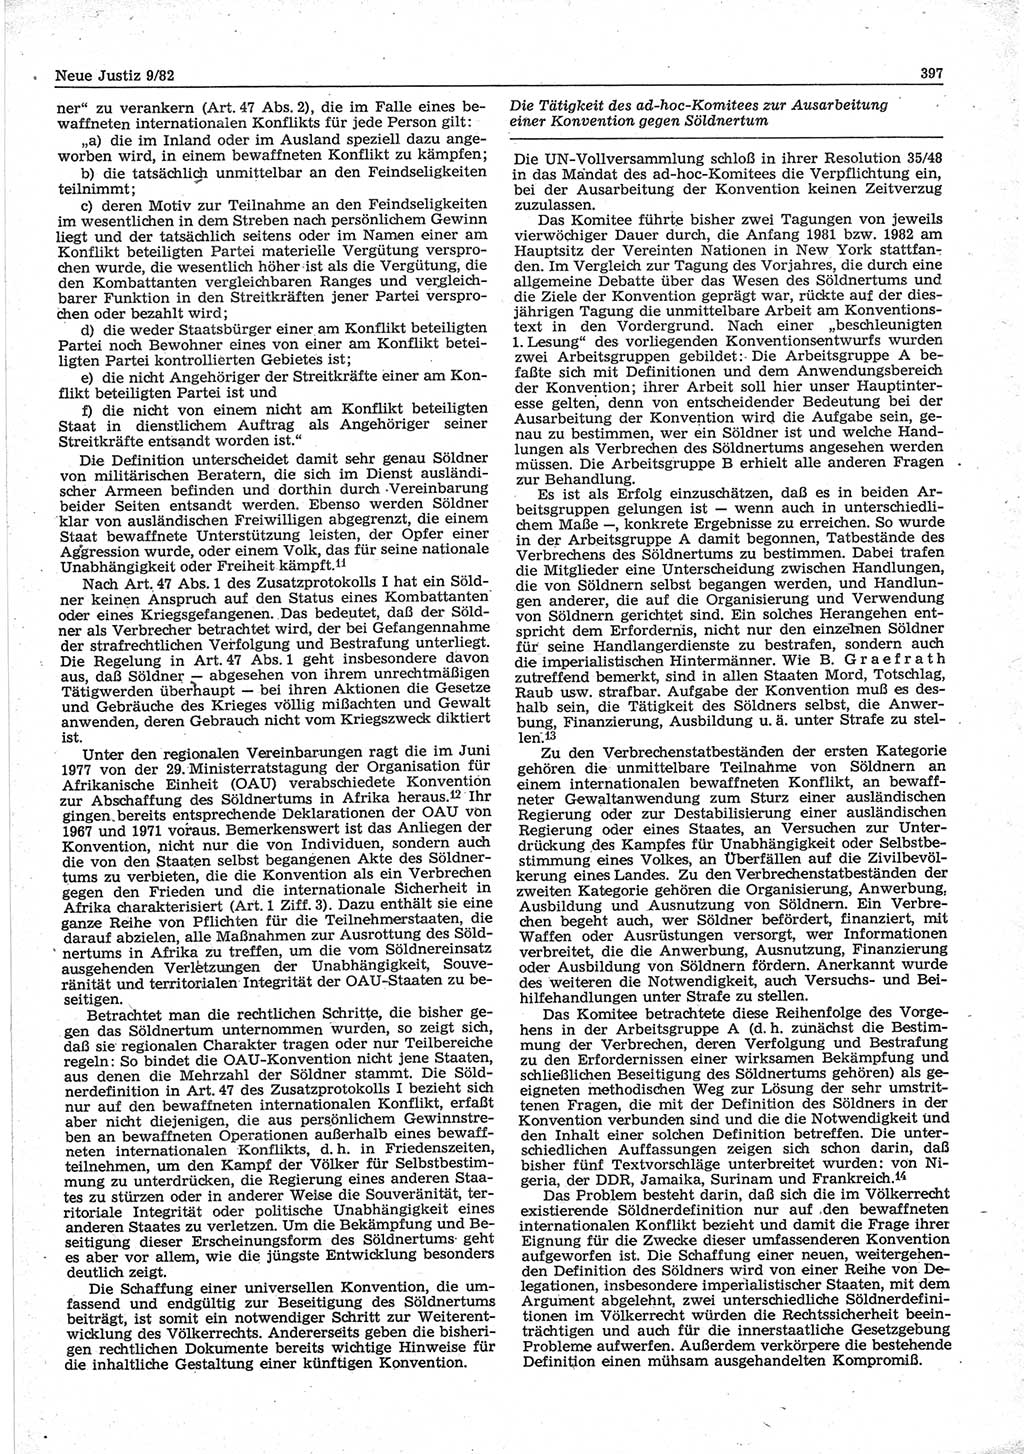 Neue Justiz (NJ), Zeitschrift für sozialistisches Recht und Gesetzlichkeit [Deutsche Demokratische Republik (DDR)], 36. Jahrgang 1982, Seite 397 (NJ DDR 1982, S. 397)